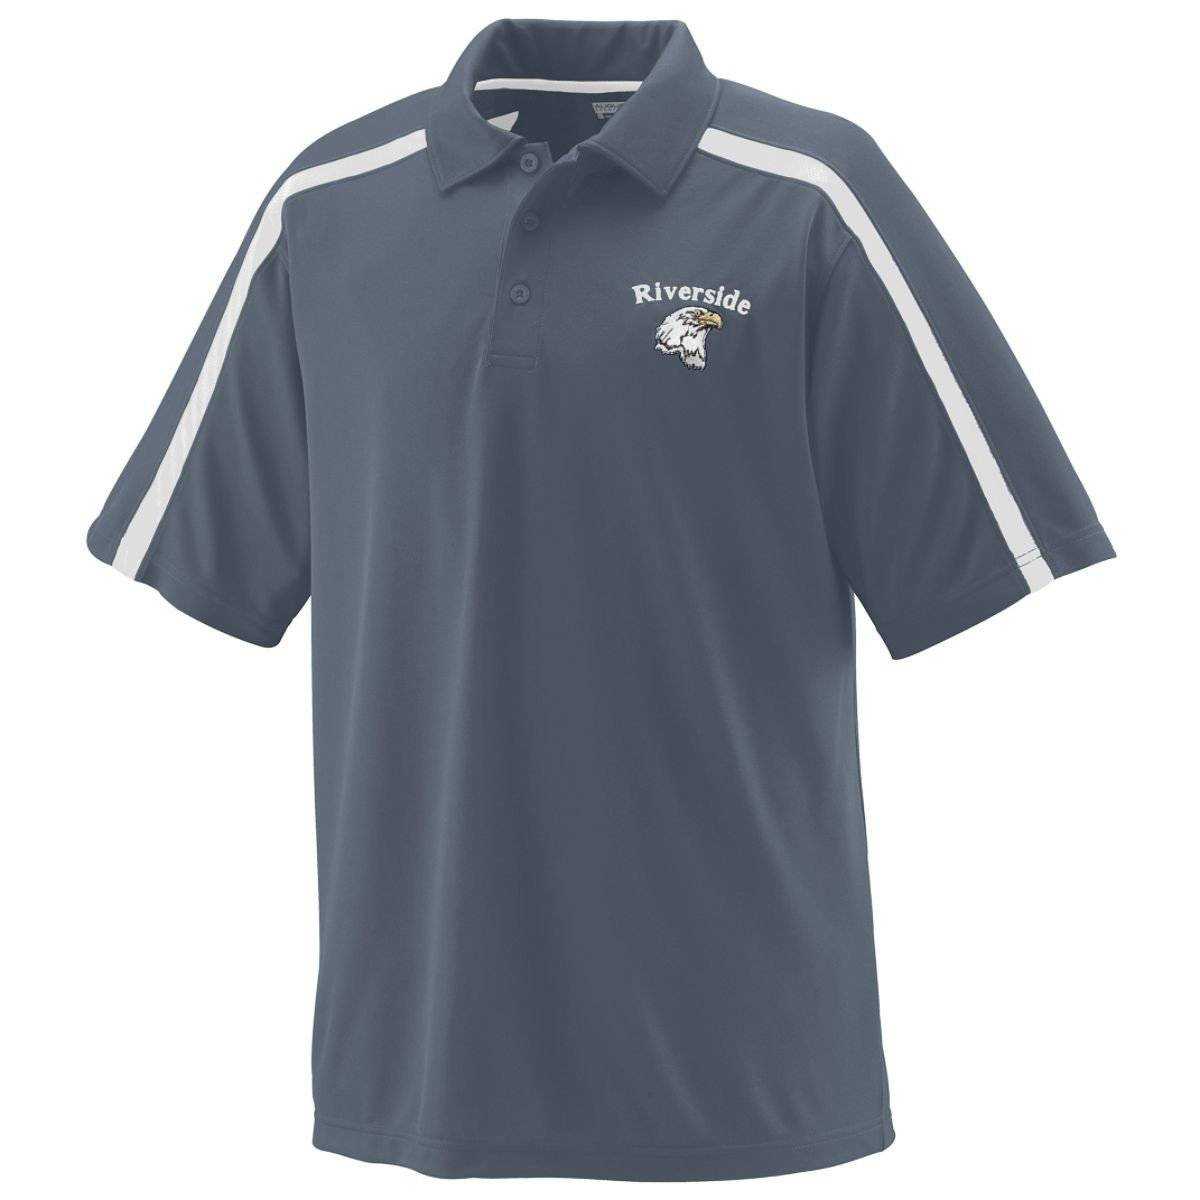 Augusta 5025 Playoff Sport Shirt - Dark Gray White - HIT a Double